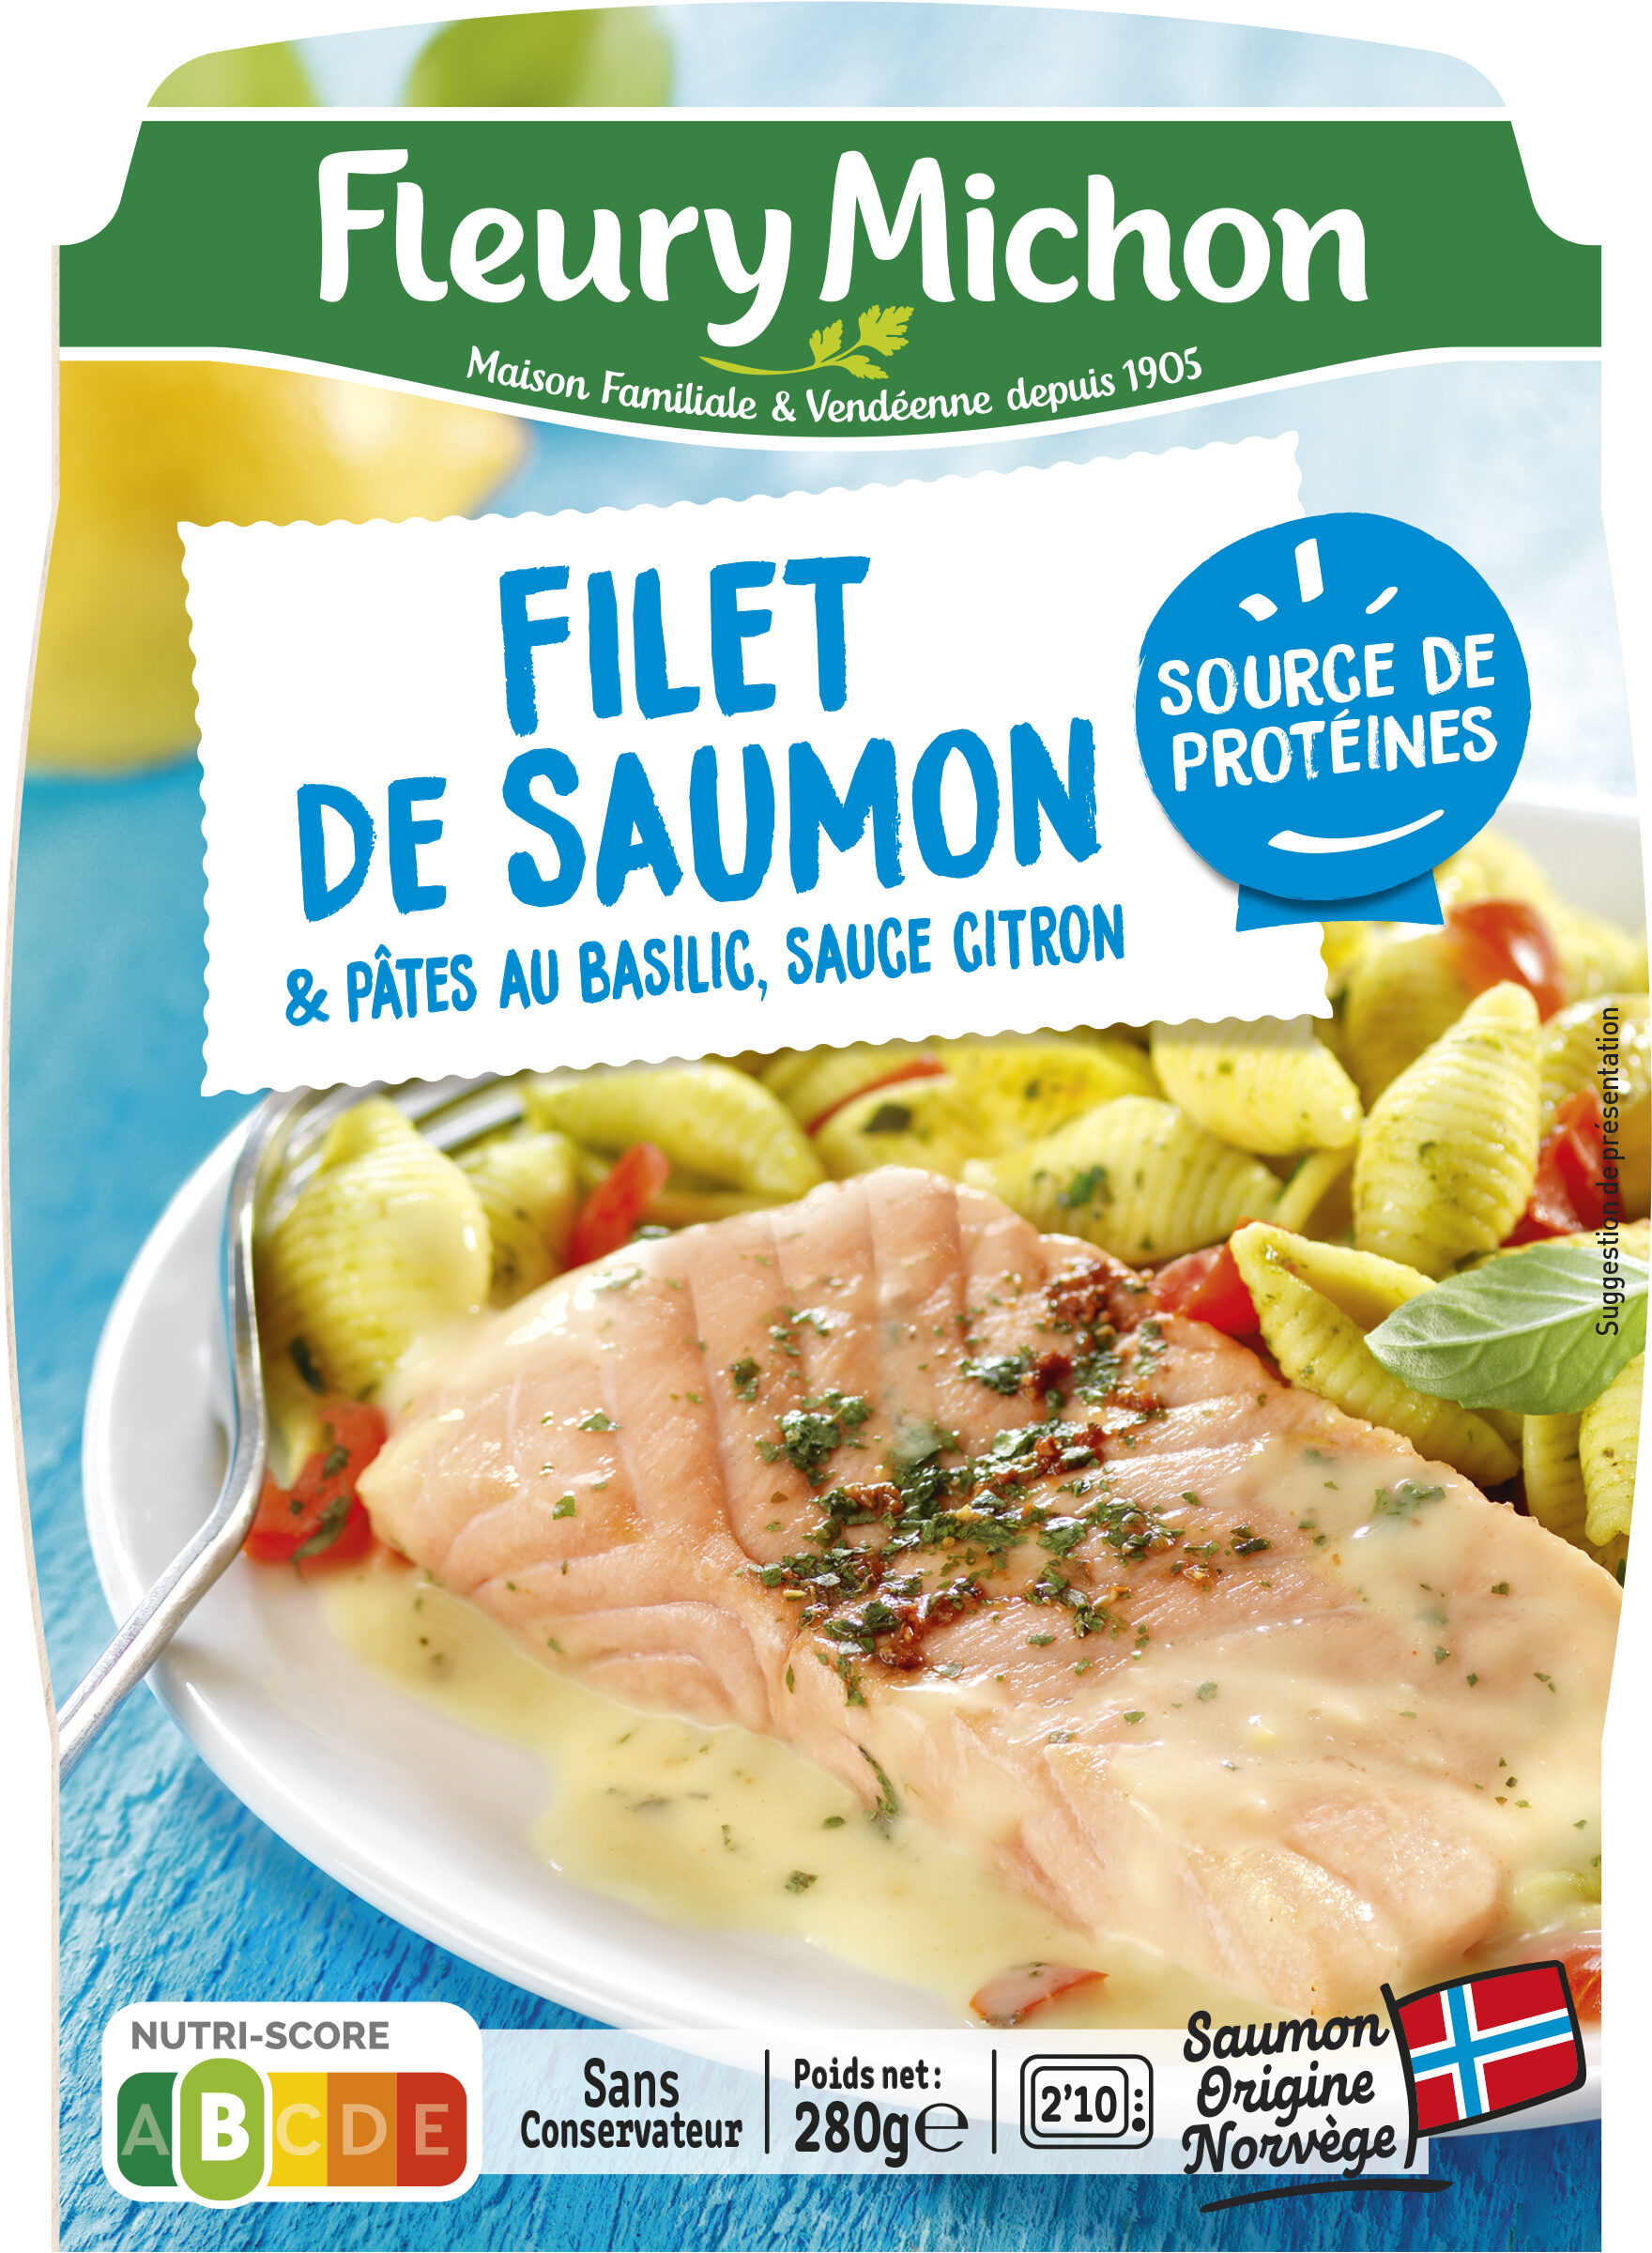 Filet de saumon & pâtes au basilic, sauce citron - Producto - fr